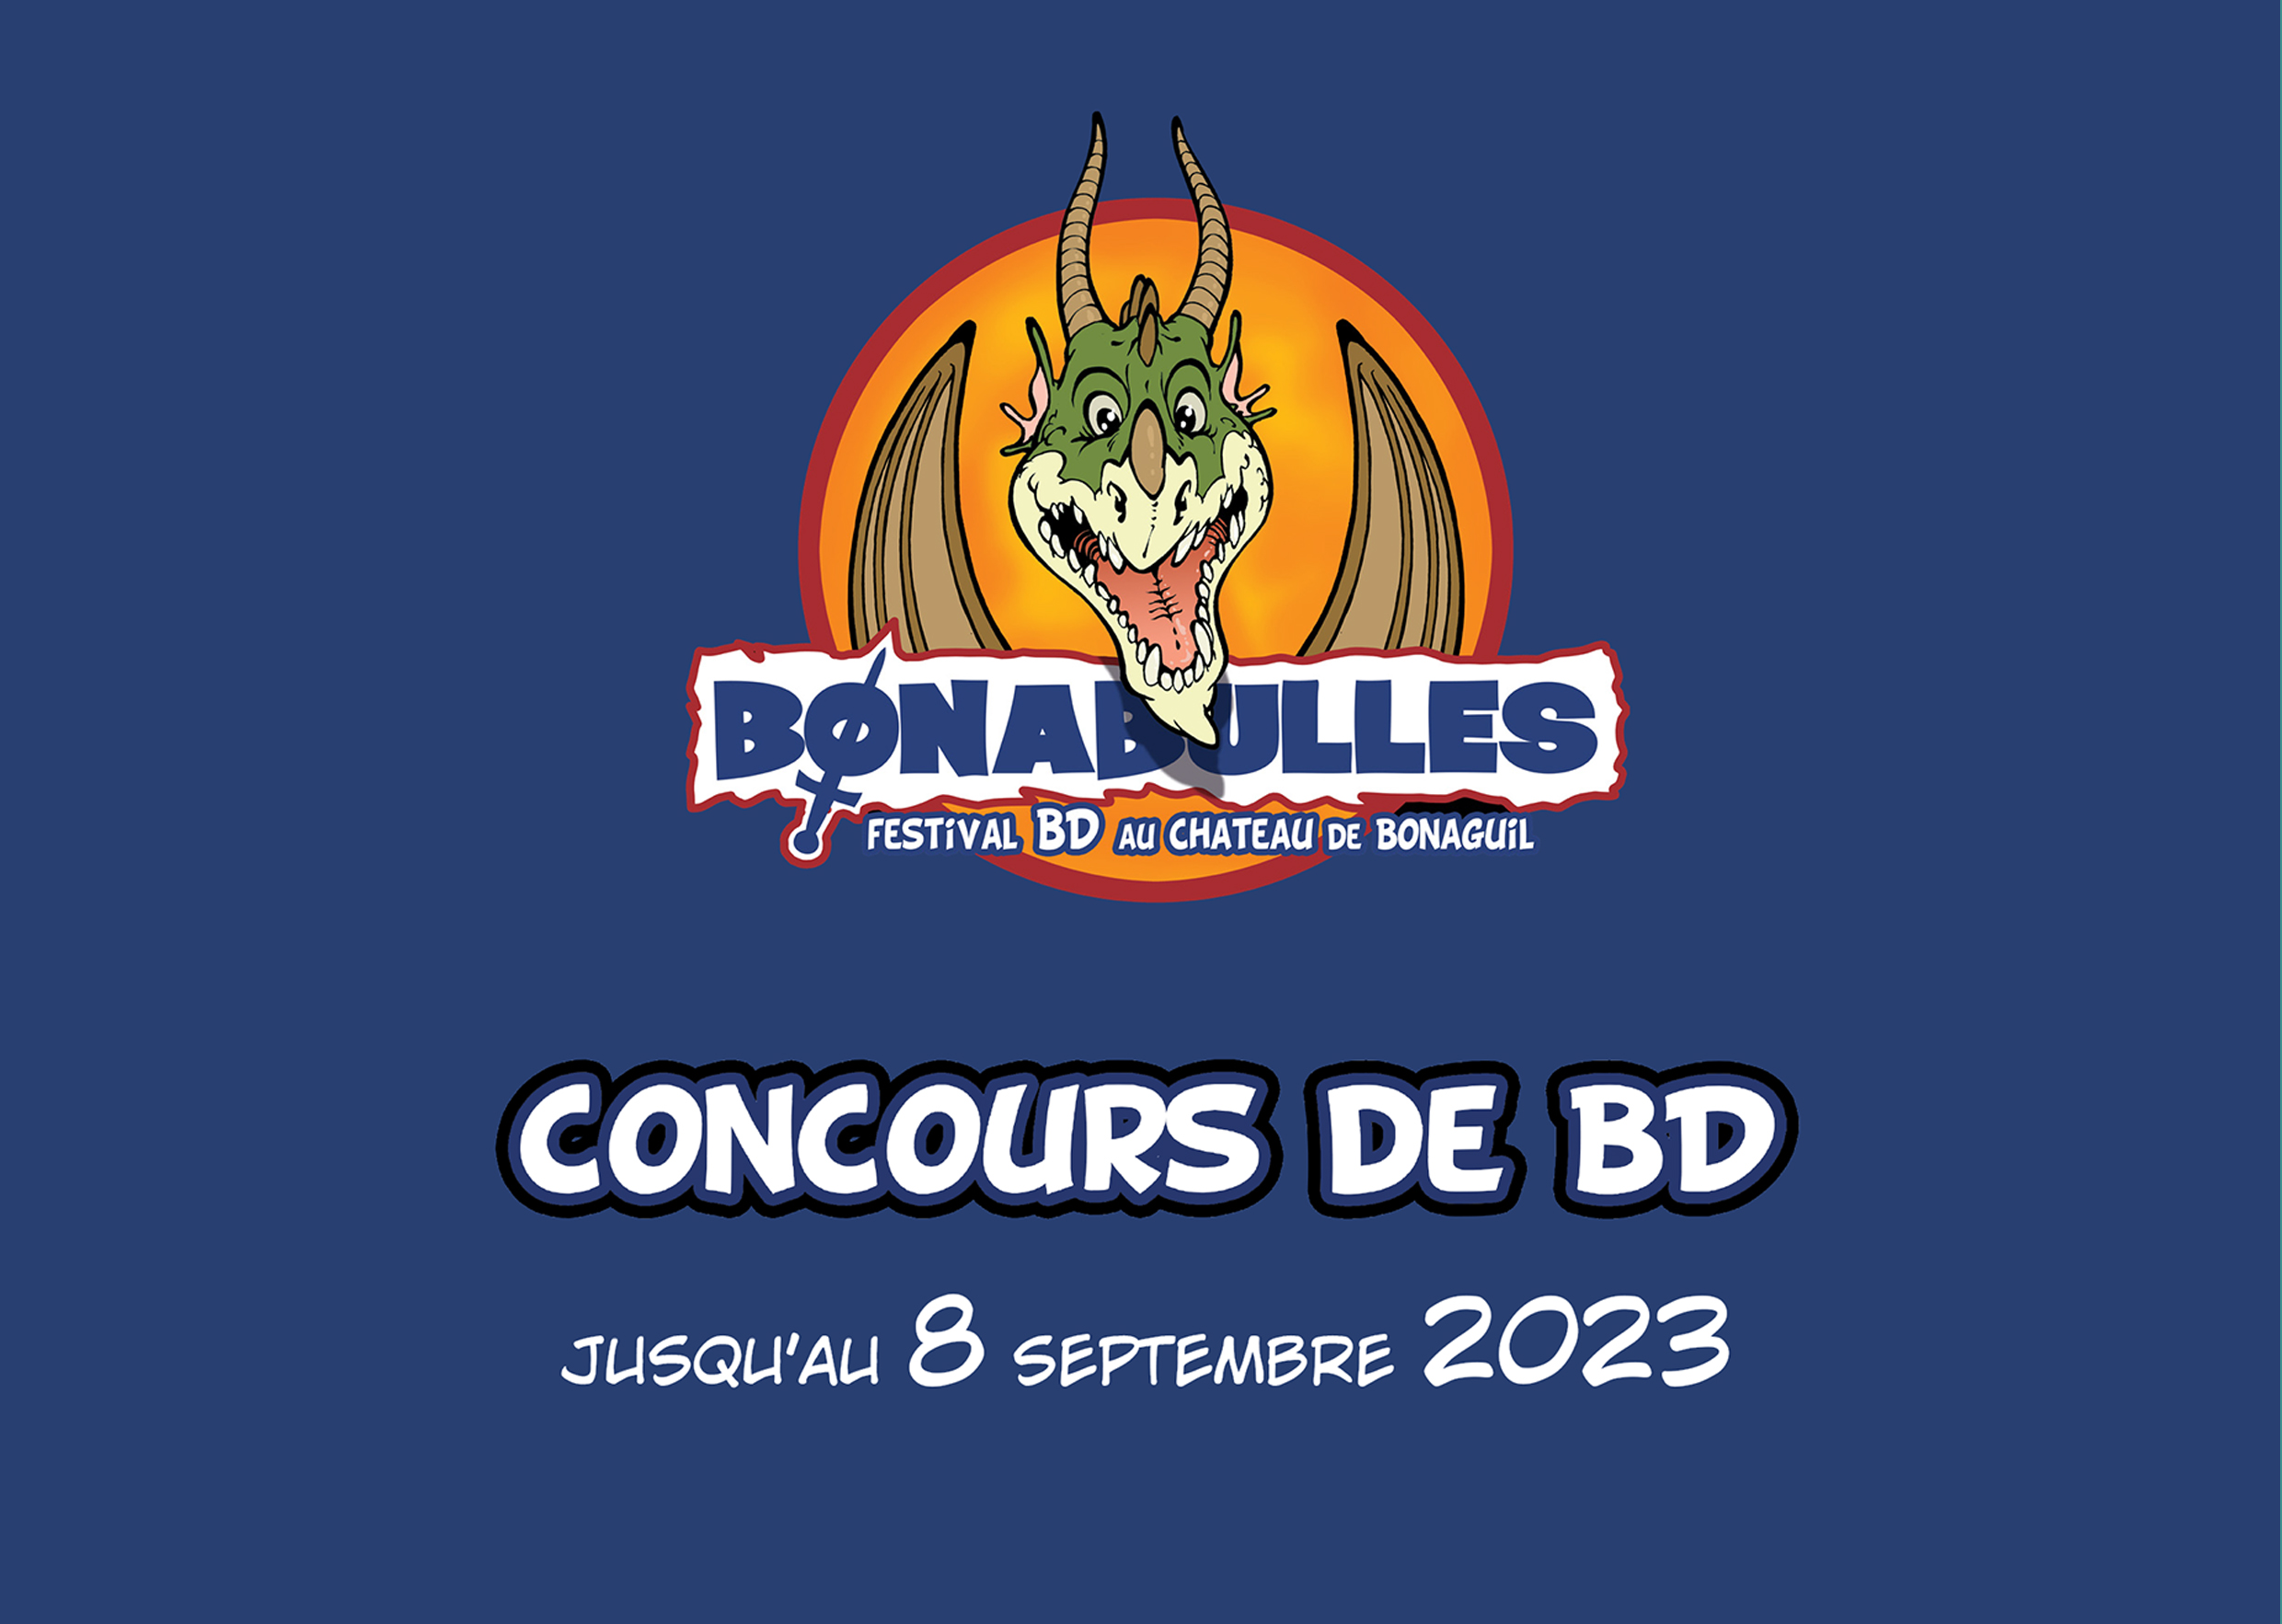 Concours de BD du Festival "Bonabulles"